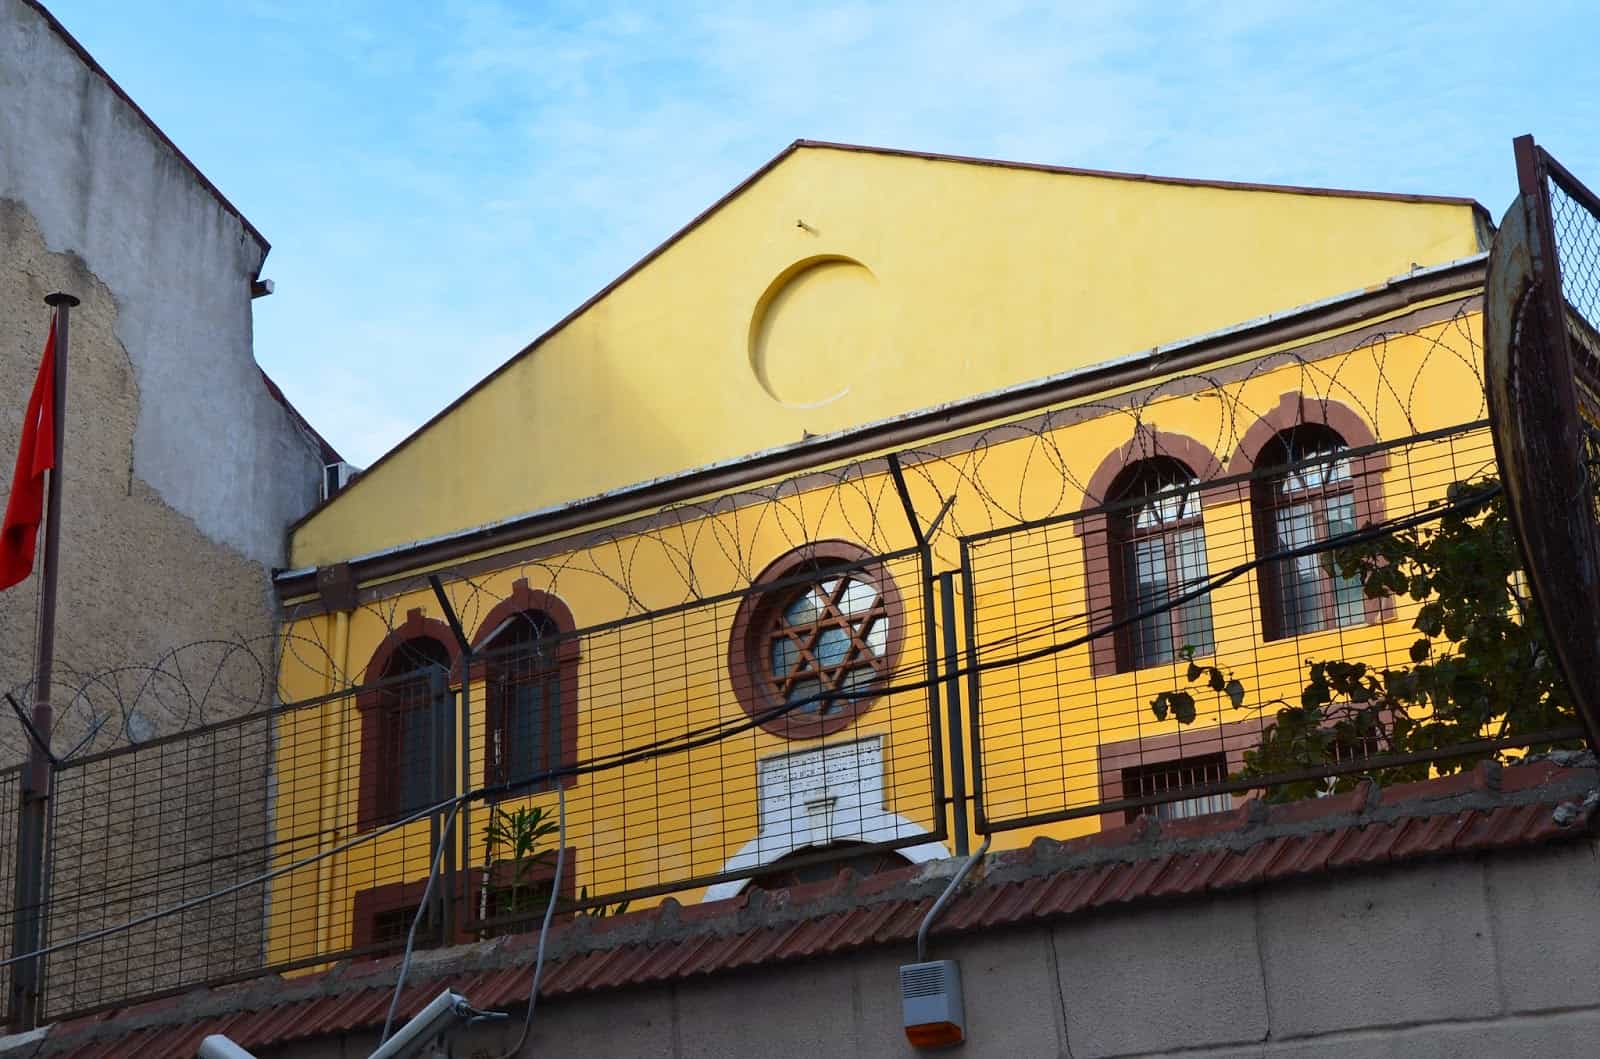 Hemdat Israel Synagogue in Rasimpaşa, Kadıköy, Istanbul, Turkey